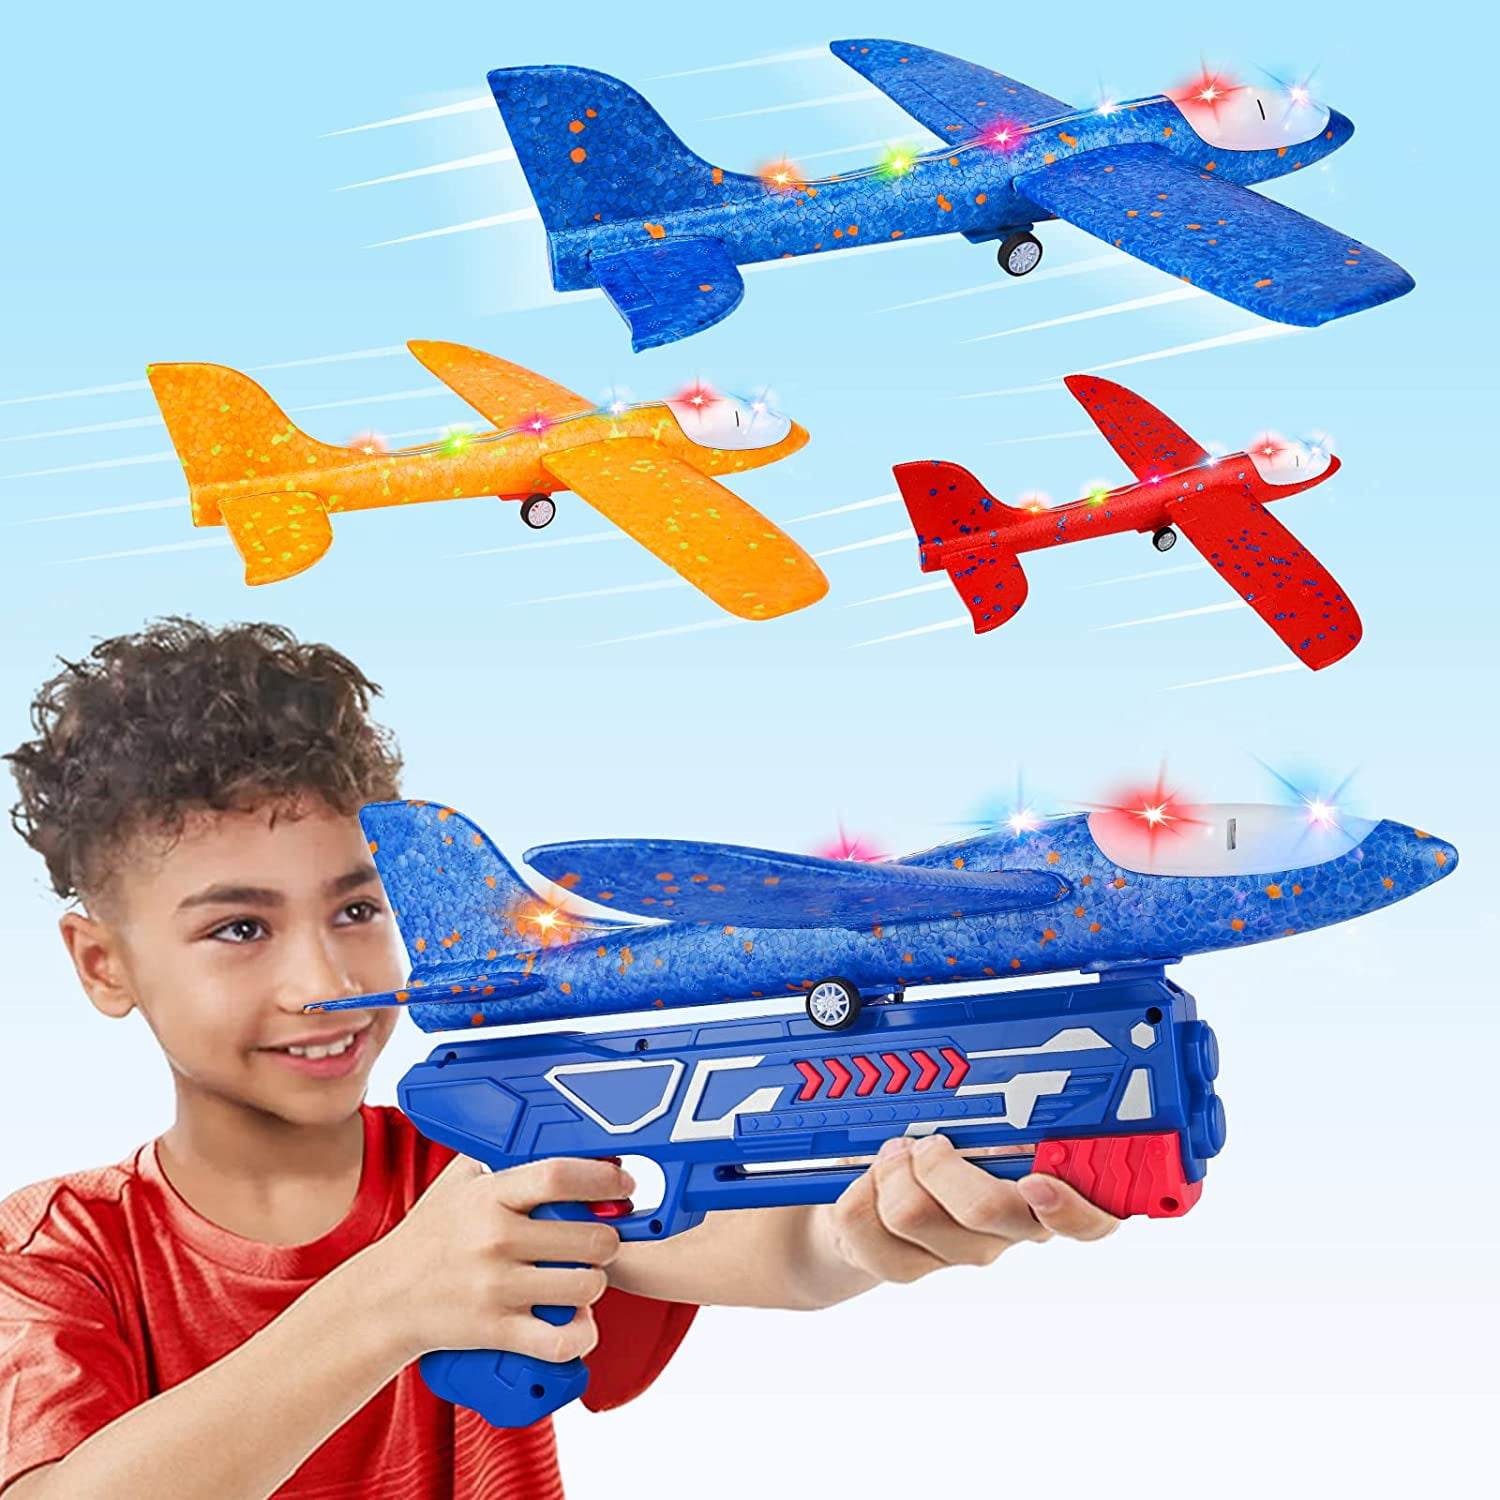 Flying toys. Летающие игрушки. Киндер летающая игрушка. Игрушка летает и едет. Lucky plane игрушка.